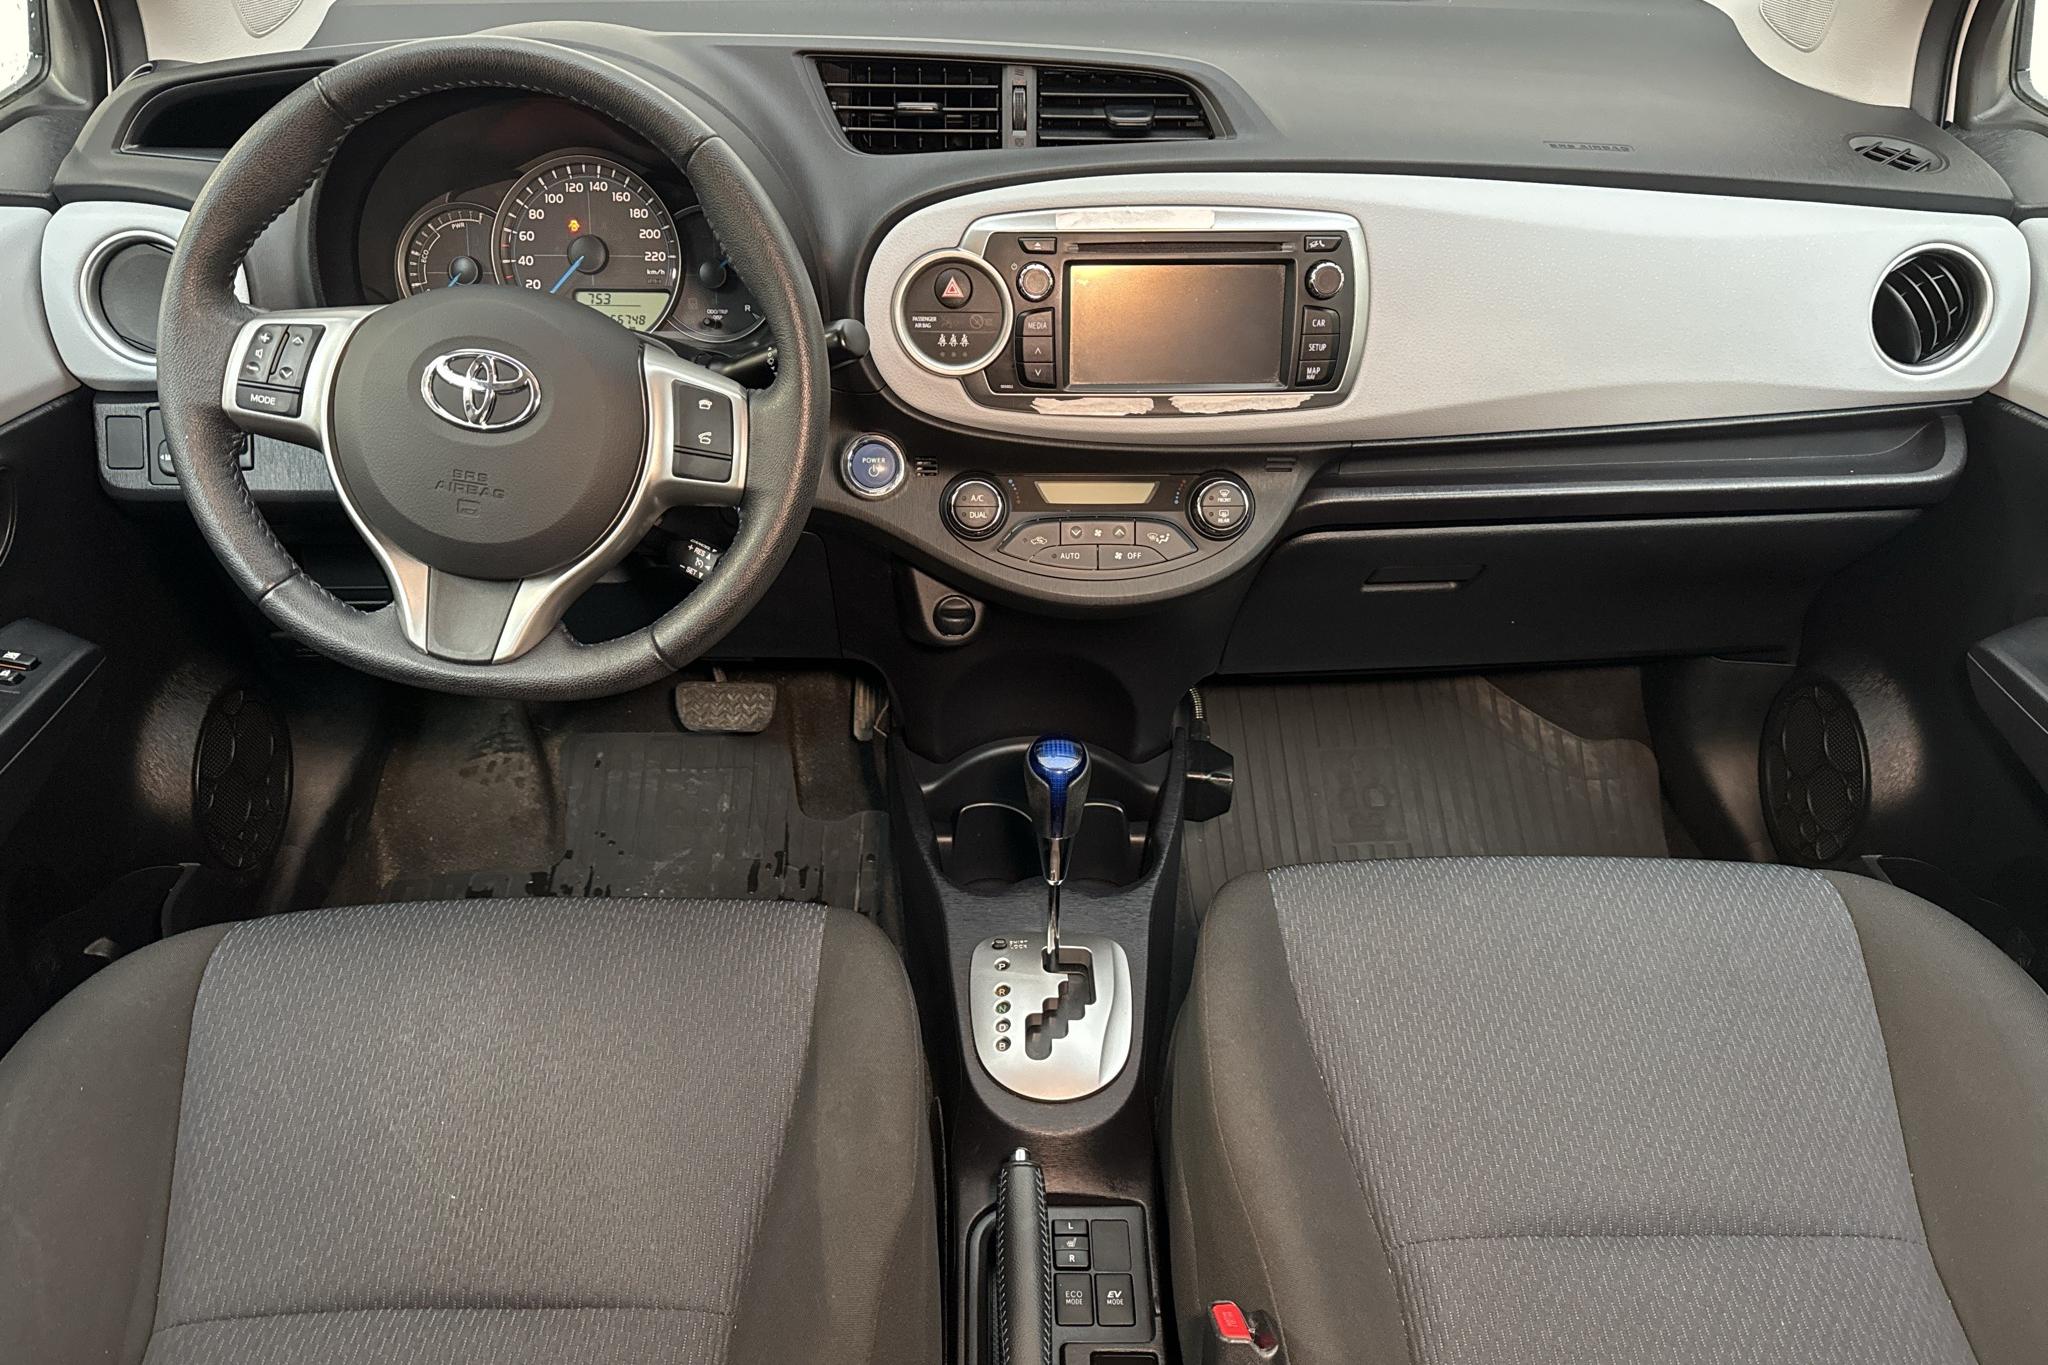 Toyota Yaris 1.5 HSD 5dr (75hk) - 56 740 km - Automaattinen - valkoinen - 2014